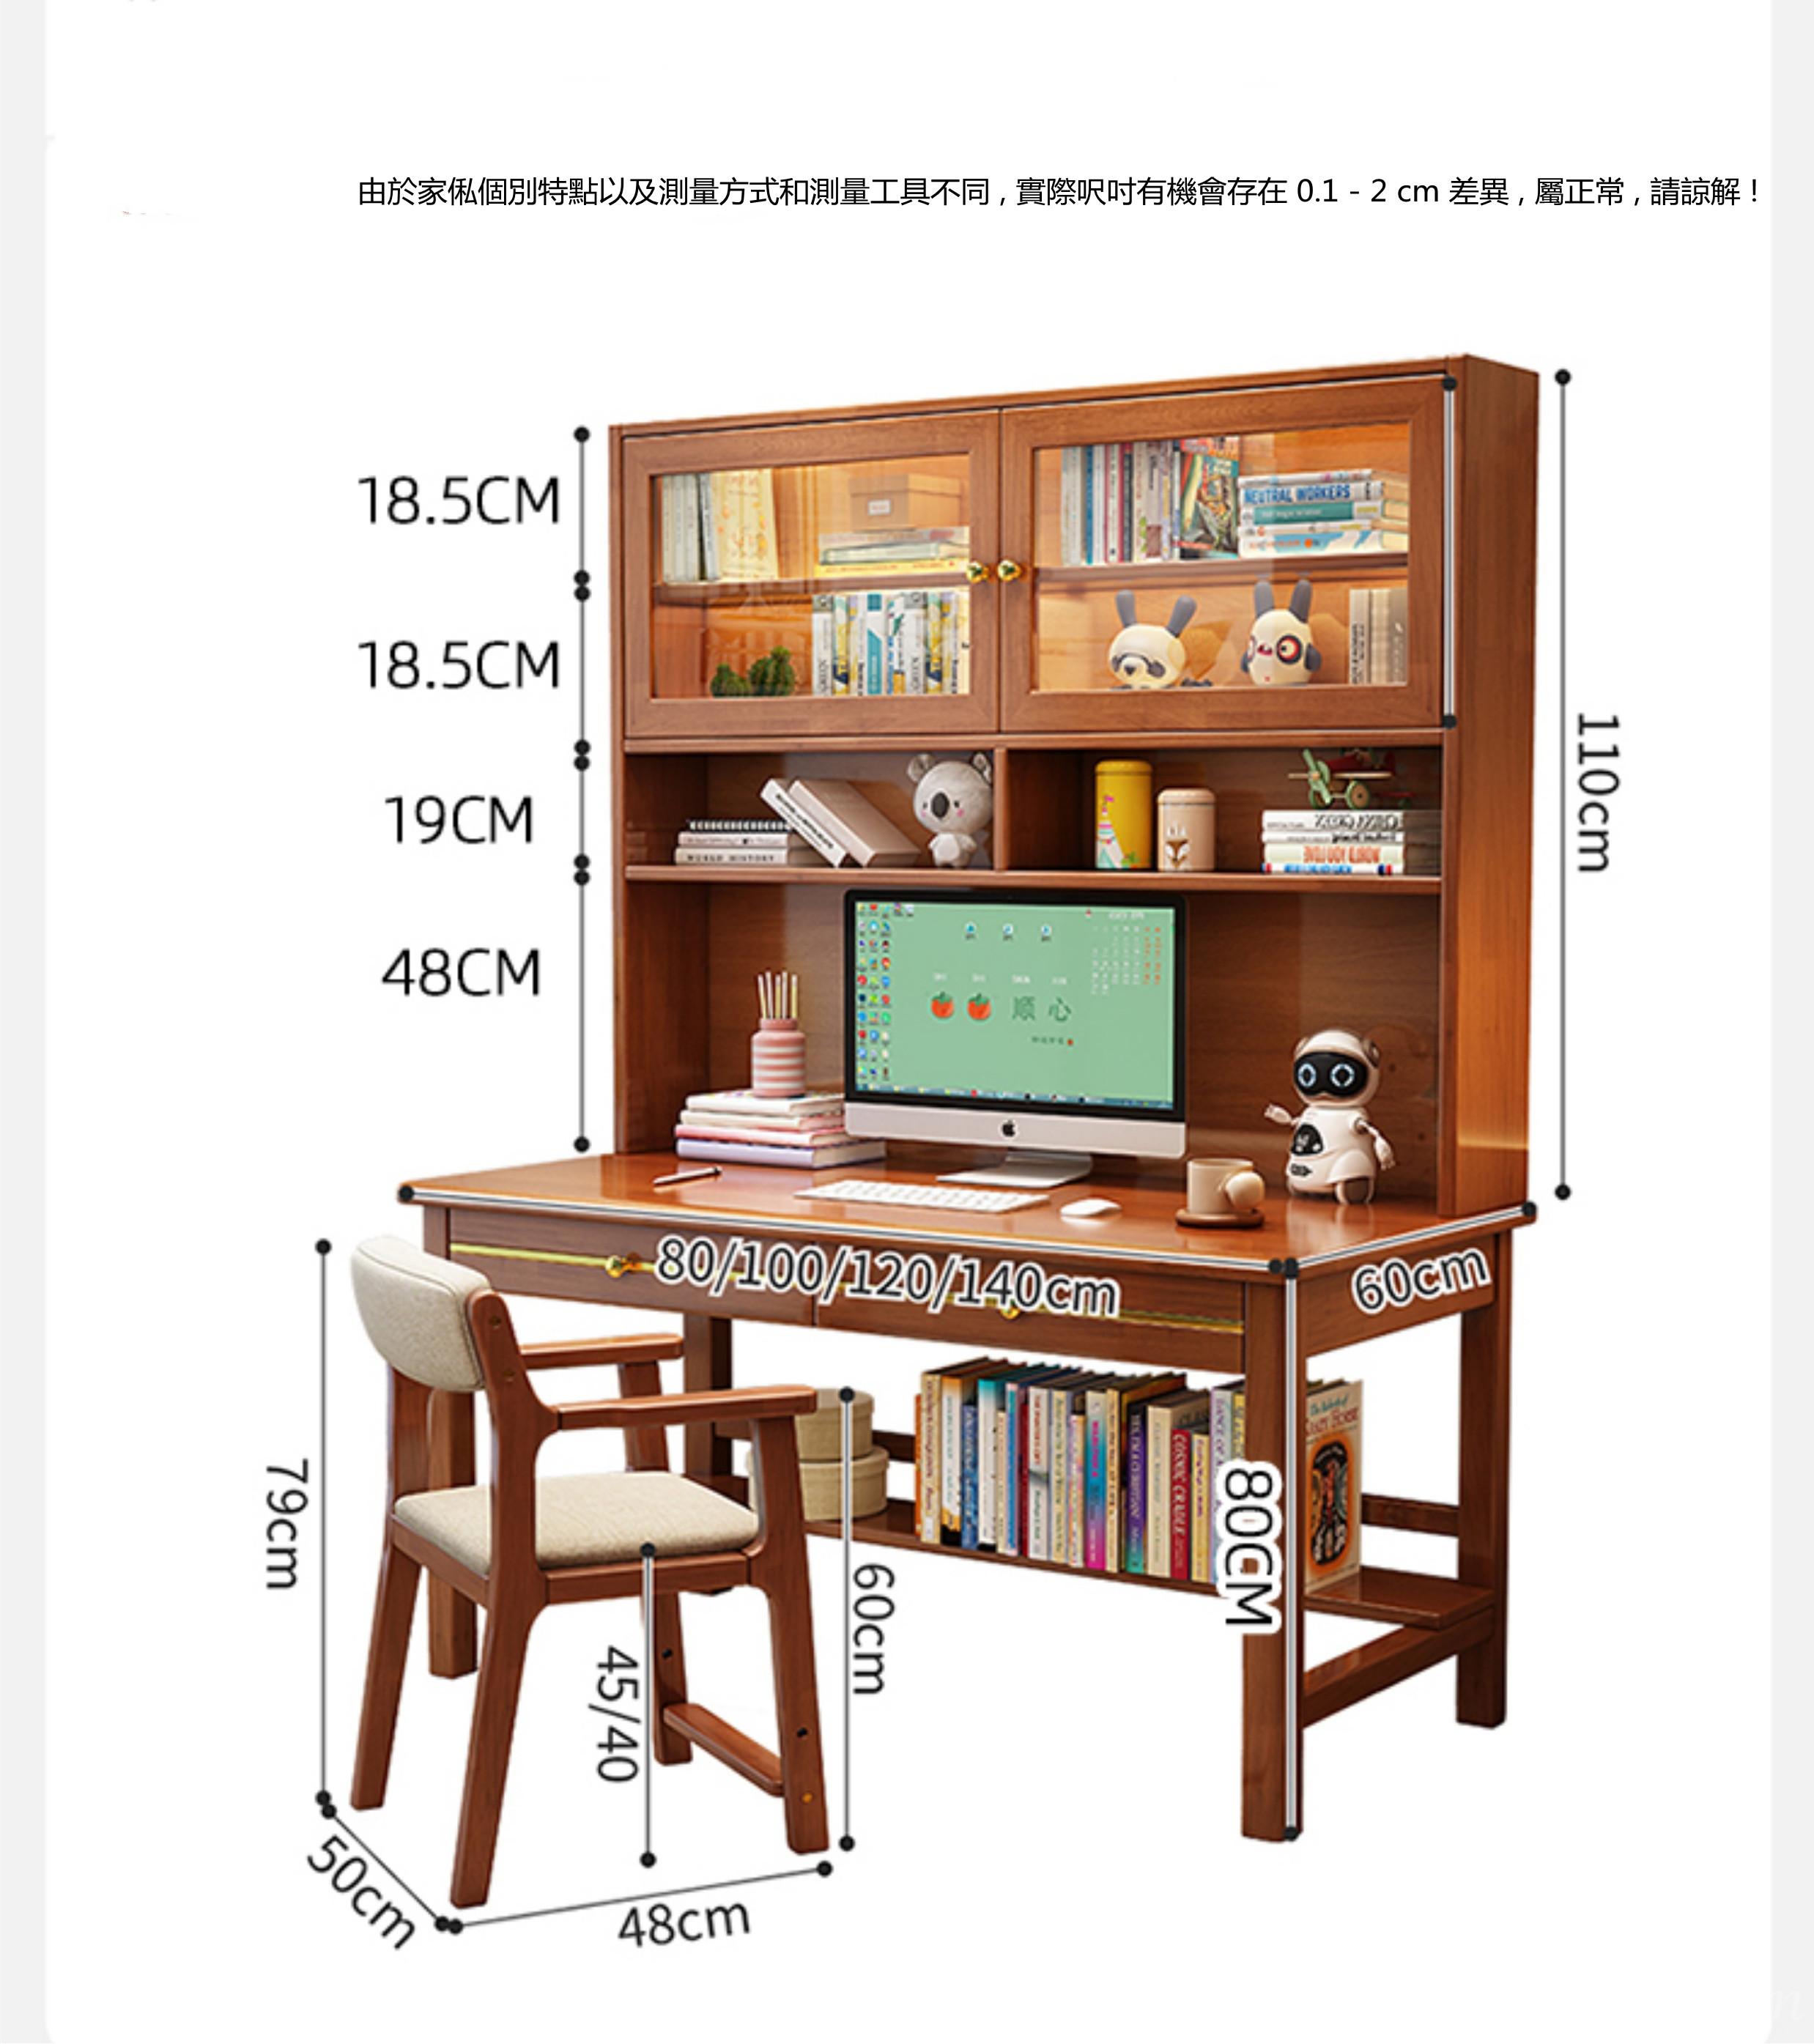 (陳列品一個120cm 白色 $1799)  日式實木橡木 書桌 電腦桌 書枱 (不包括椅子)*80/100/120/140cm (IS8920)